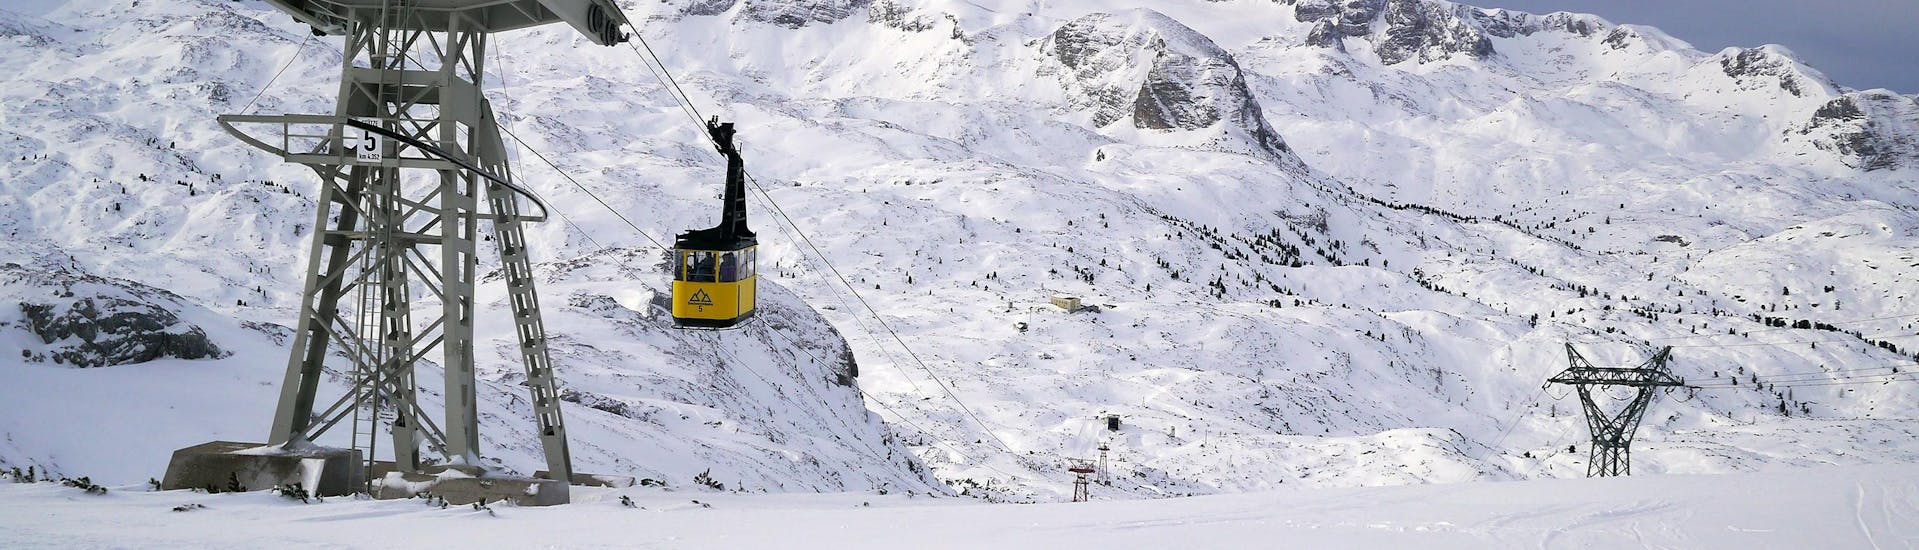 Blick auf die Gondel im verschneiten Skigebiet Dachstein Krippenstein, wo örtliche Skischulen ihre Skikurse anbieten.